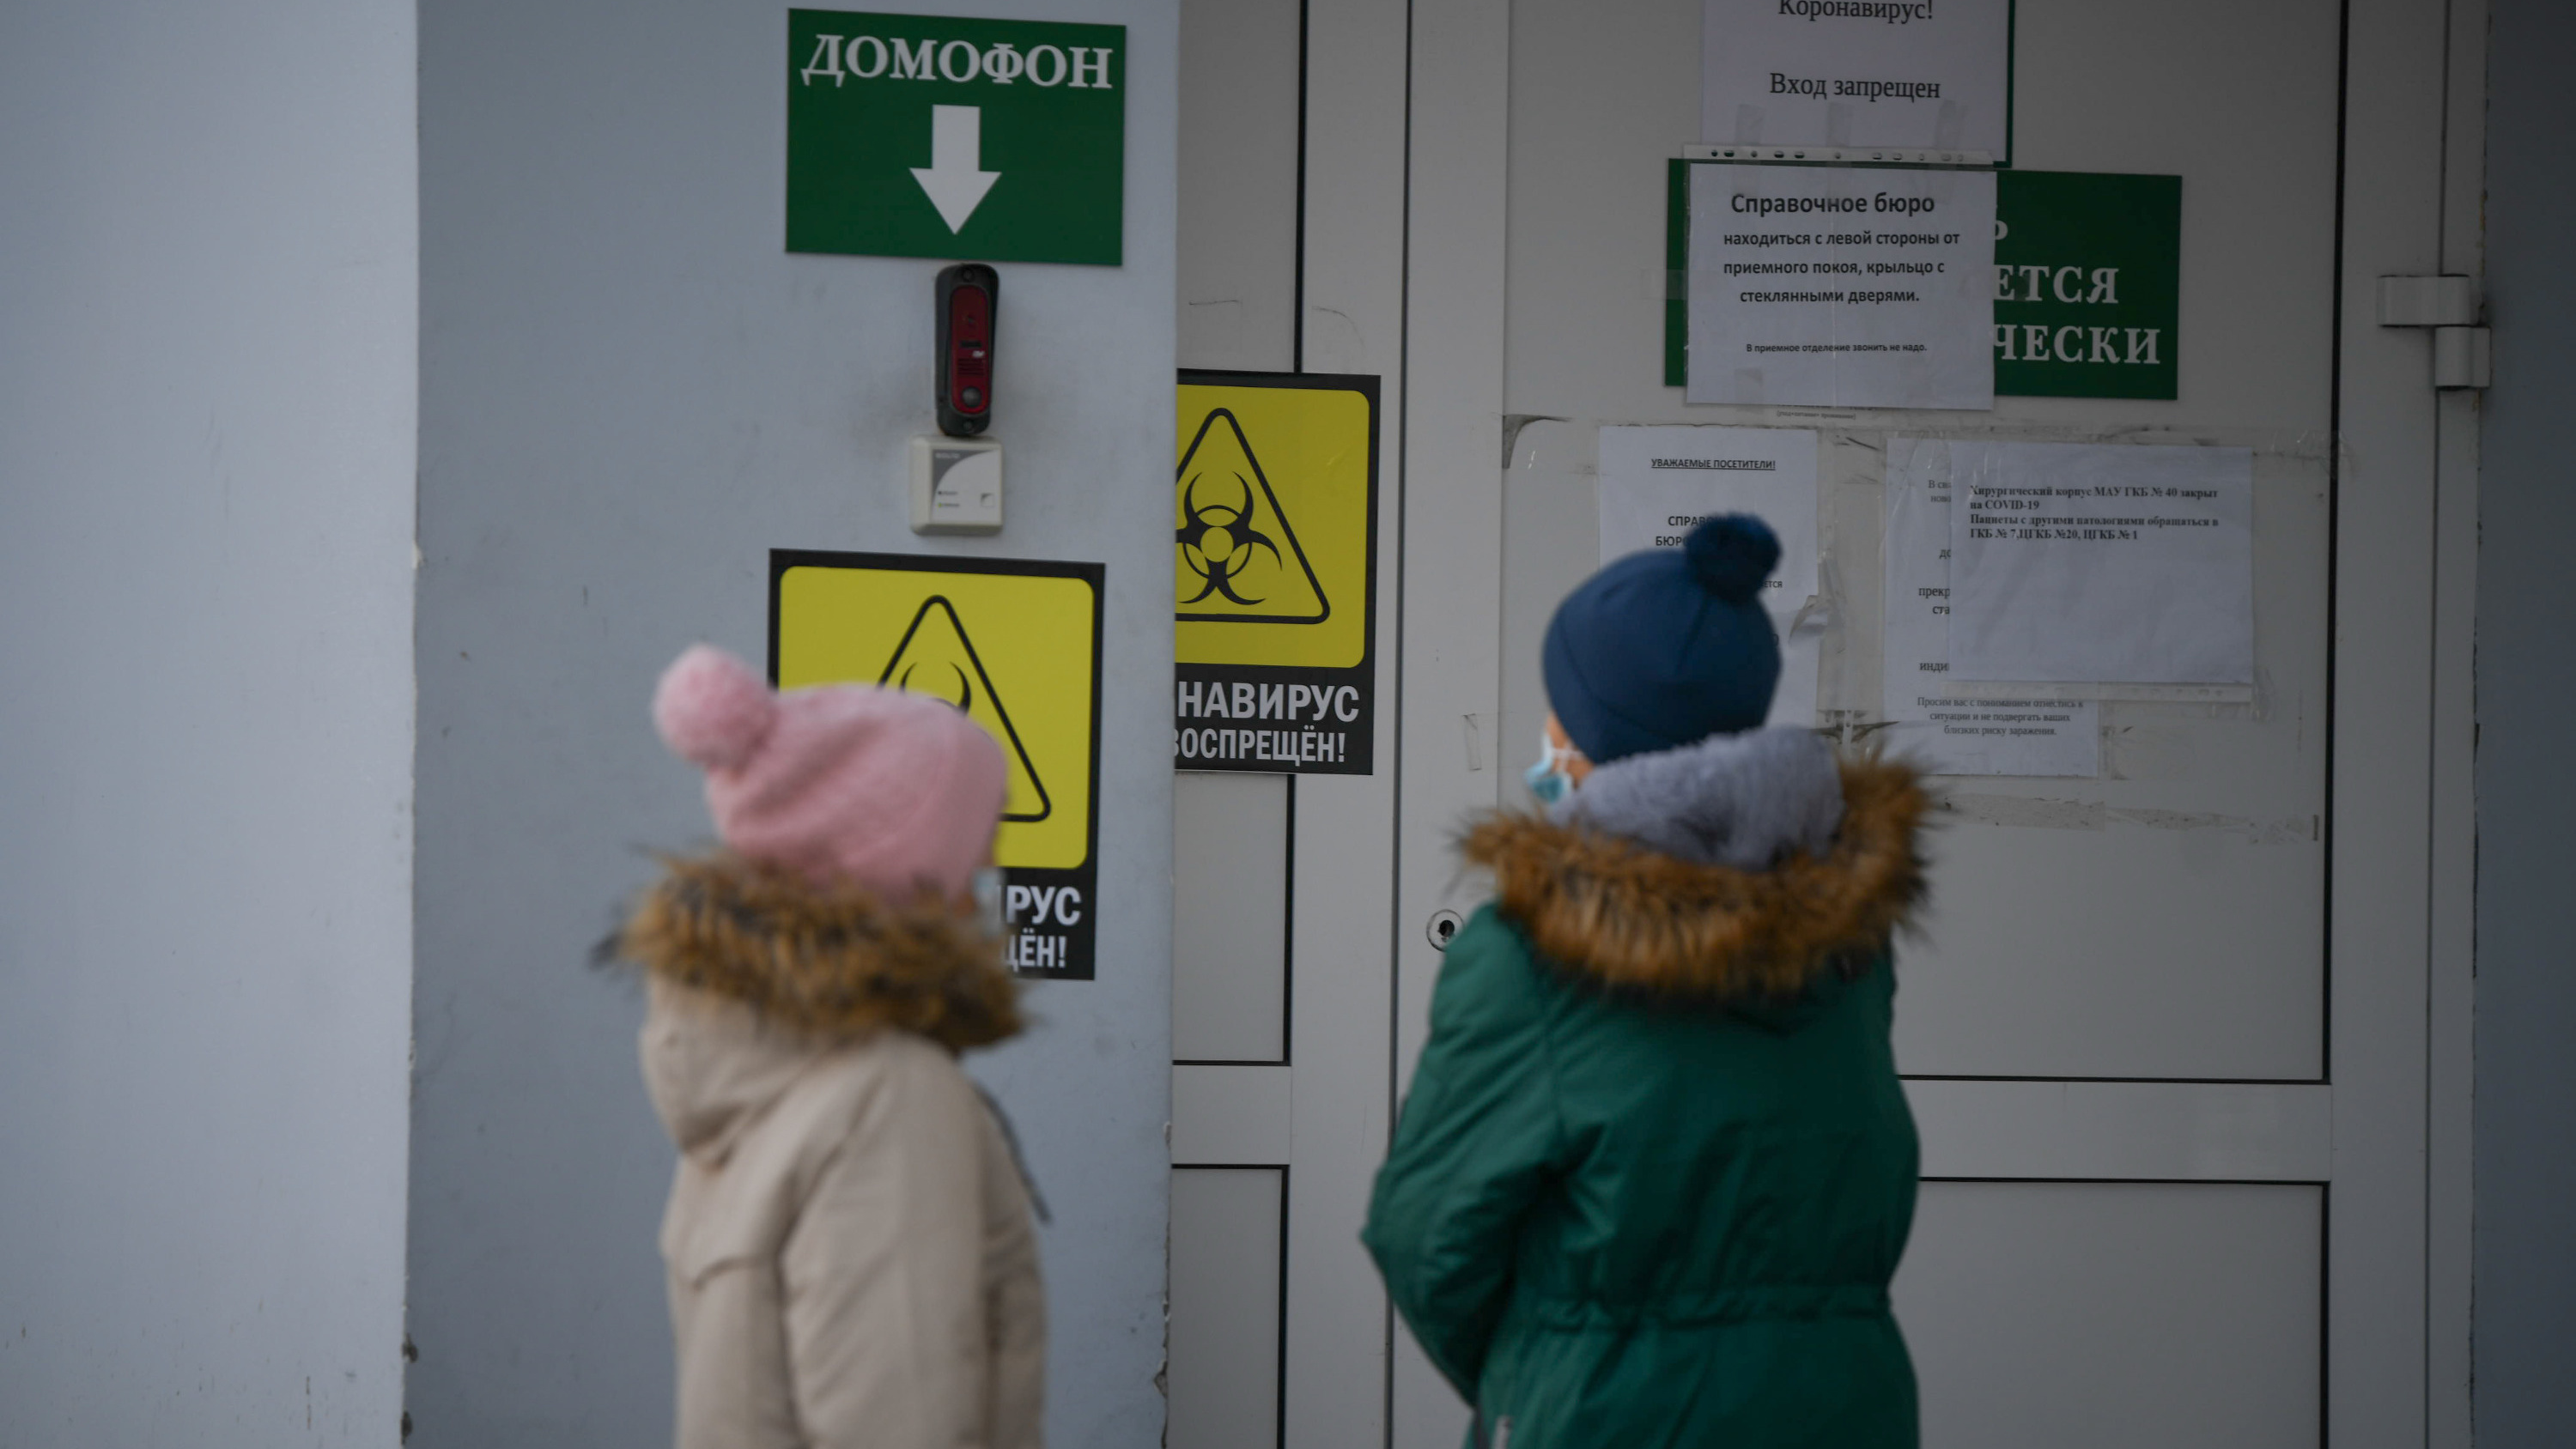 Частная клиника в Екатеринбурге будет тестировать новые таблетки от коронавируса. Их создала компания Pfizer